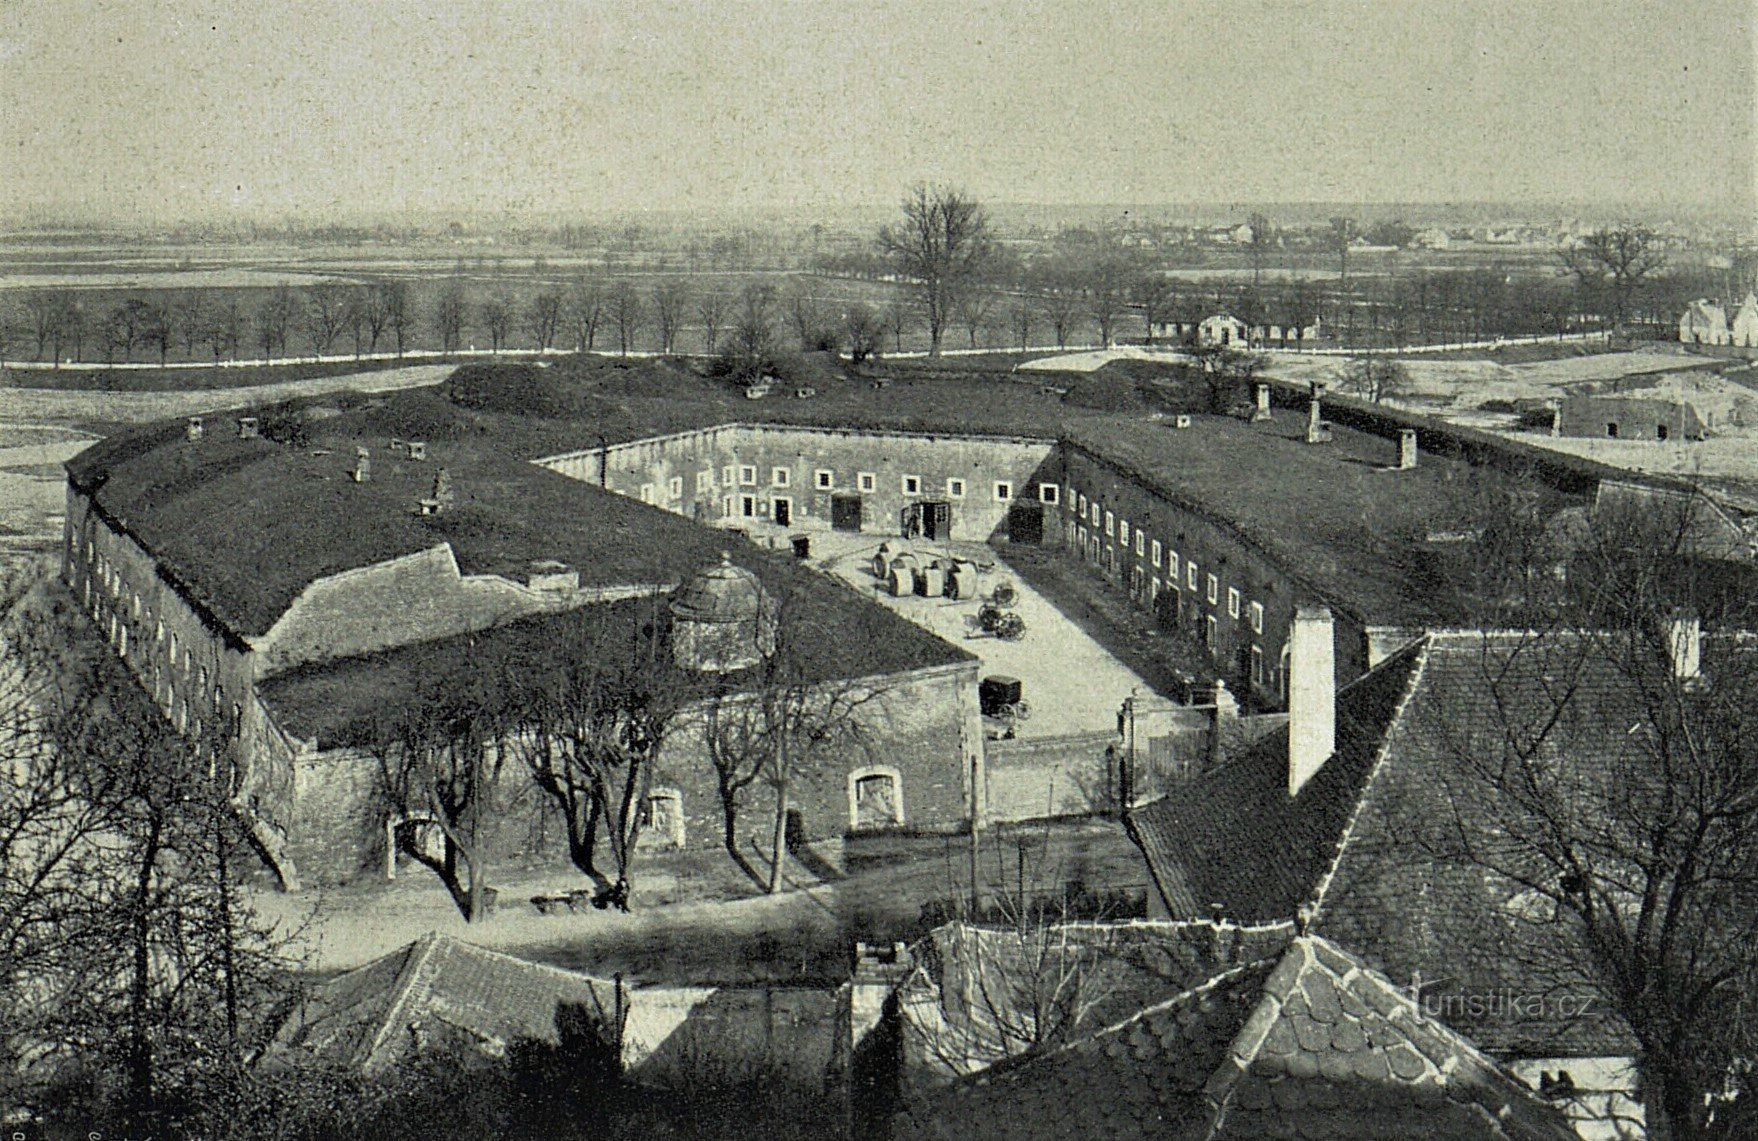 35. számú lovas, ahol a lengyel felkelőket internálták (Hradec Králové, 1912)